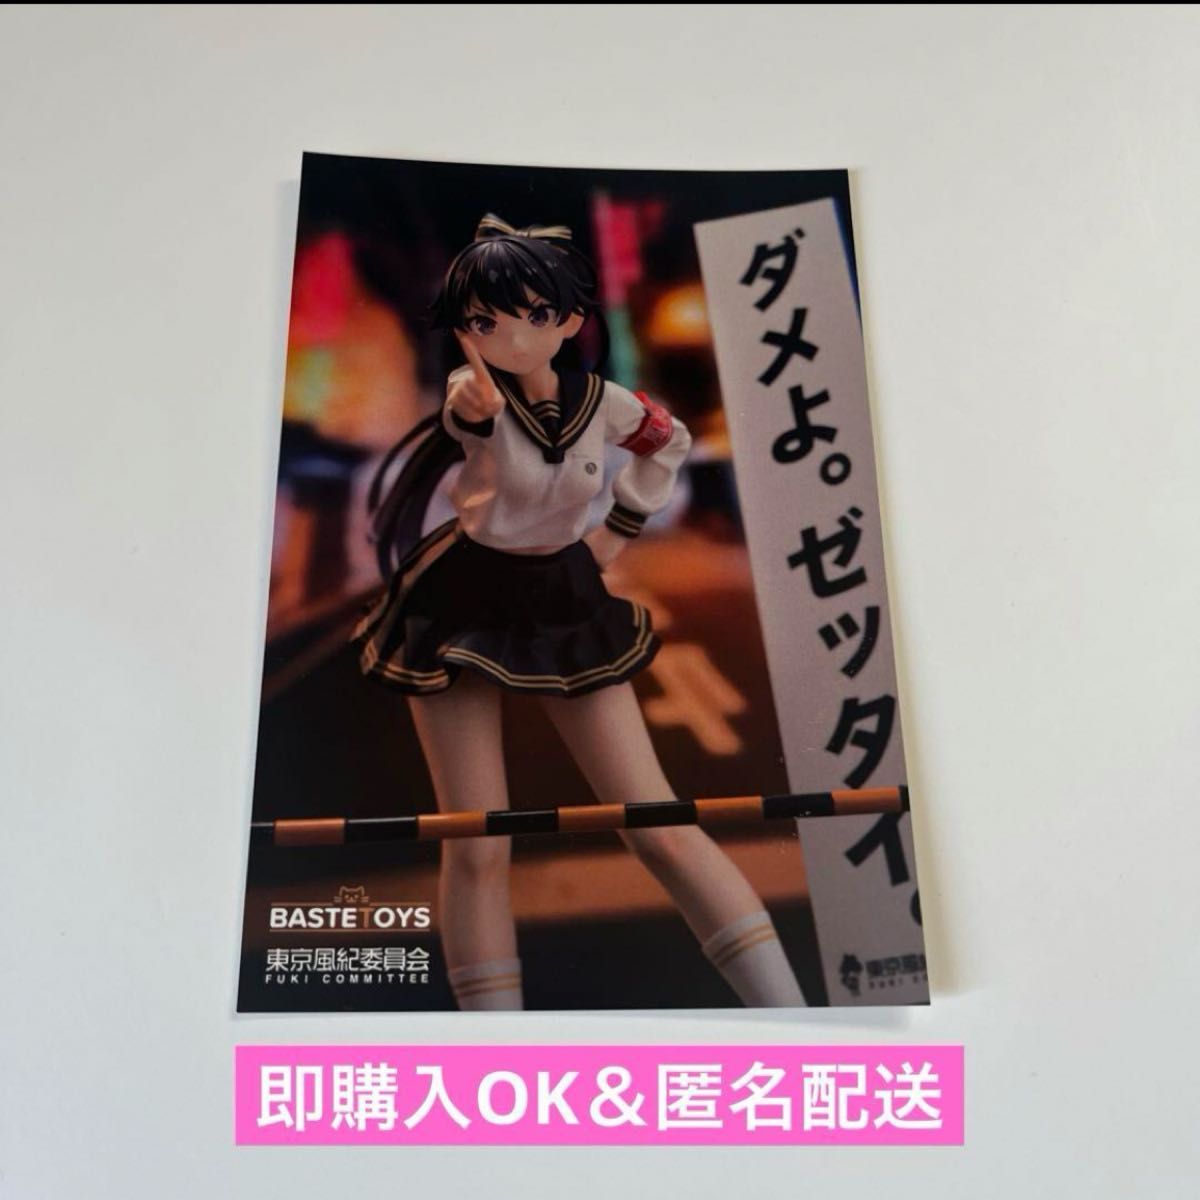 【即購入OK】東京風紀委員会 フィギュア ポストカード イベント限定配布